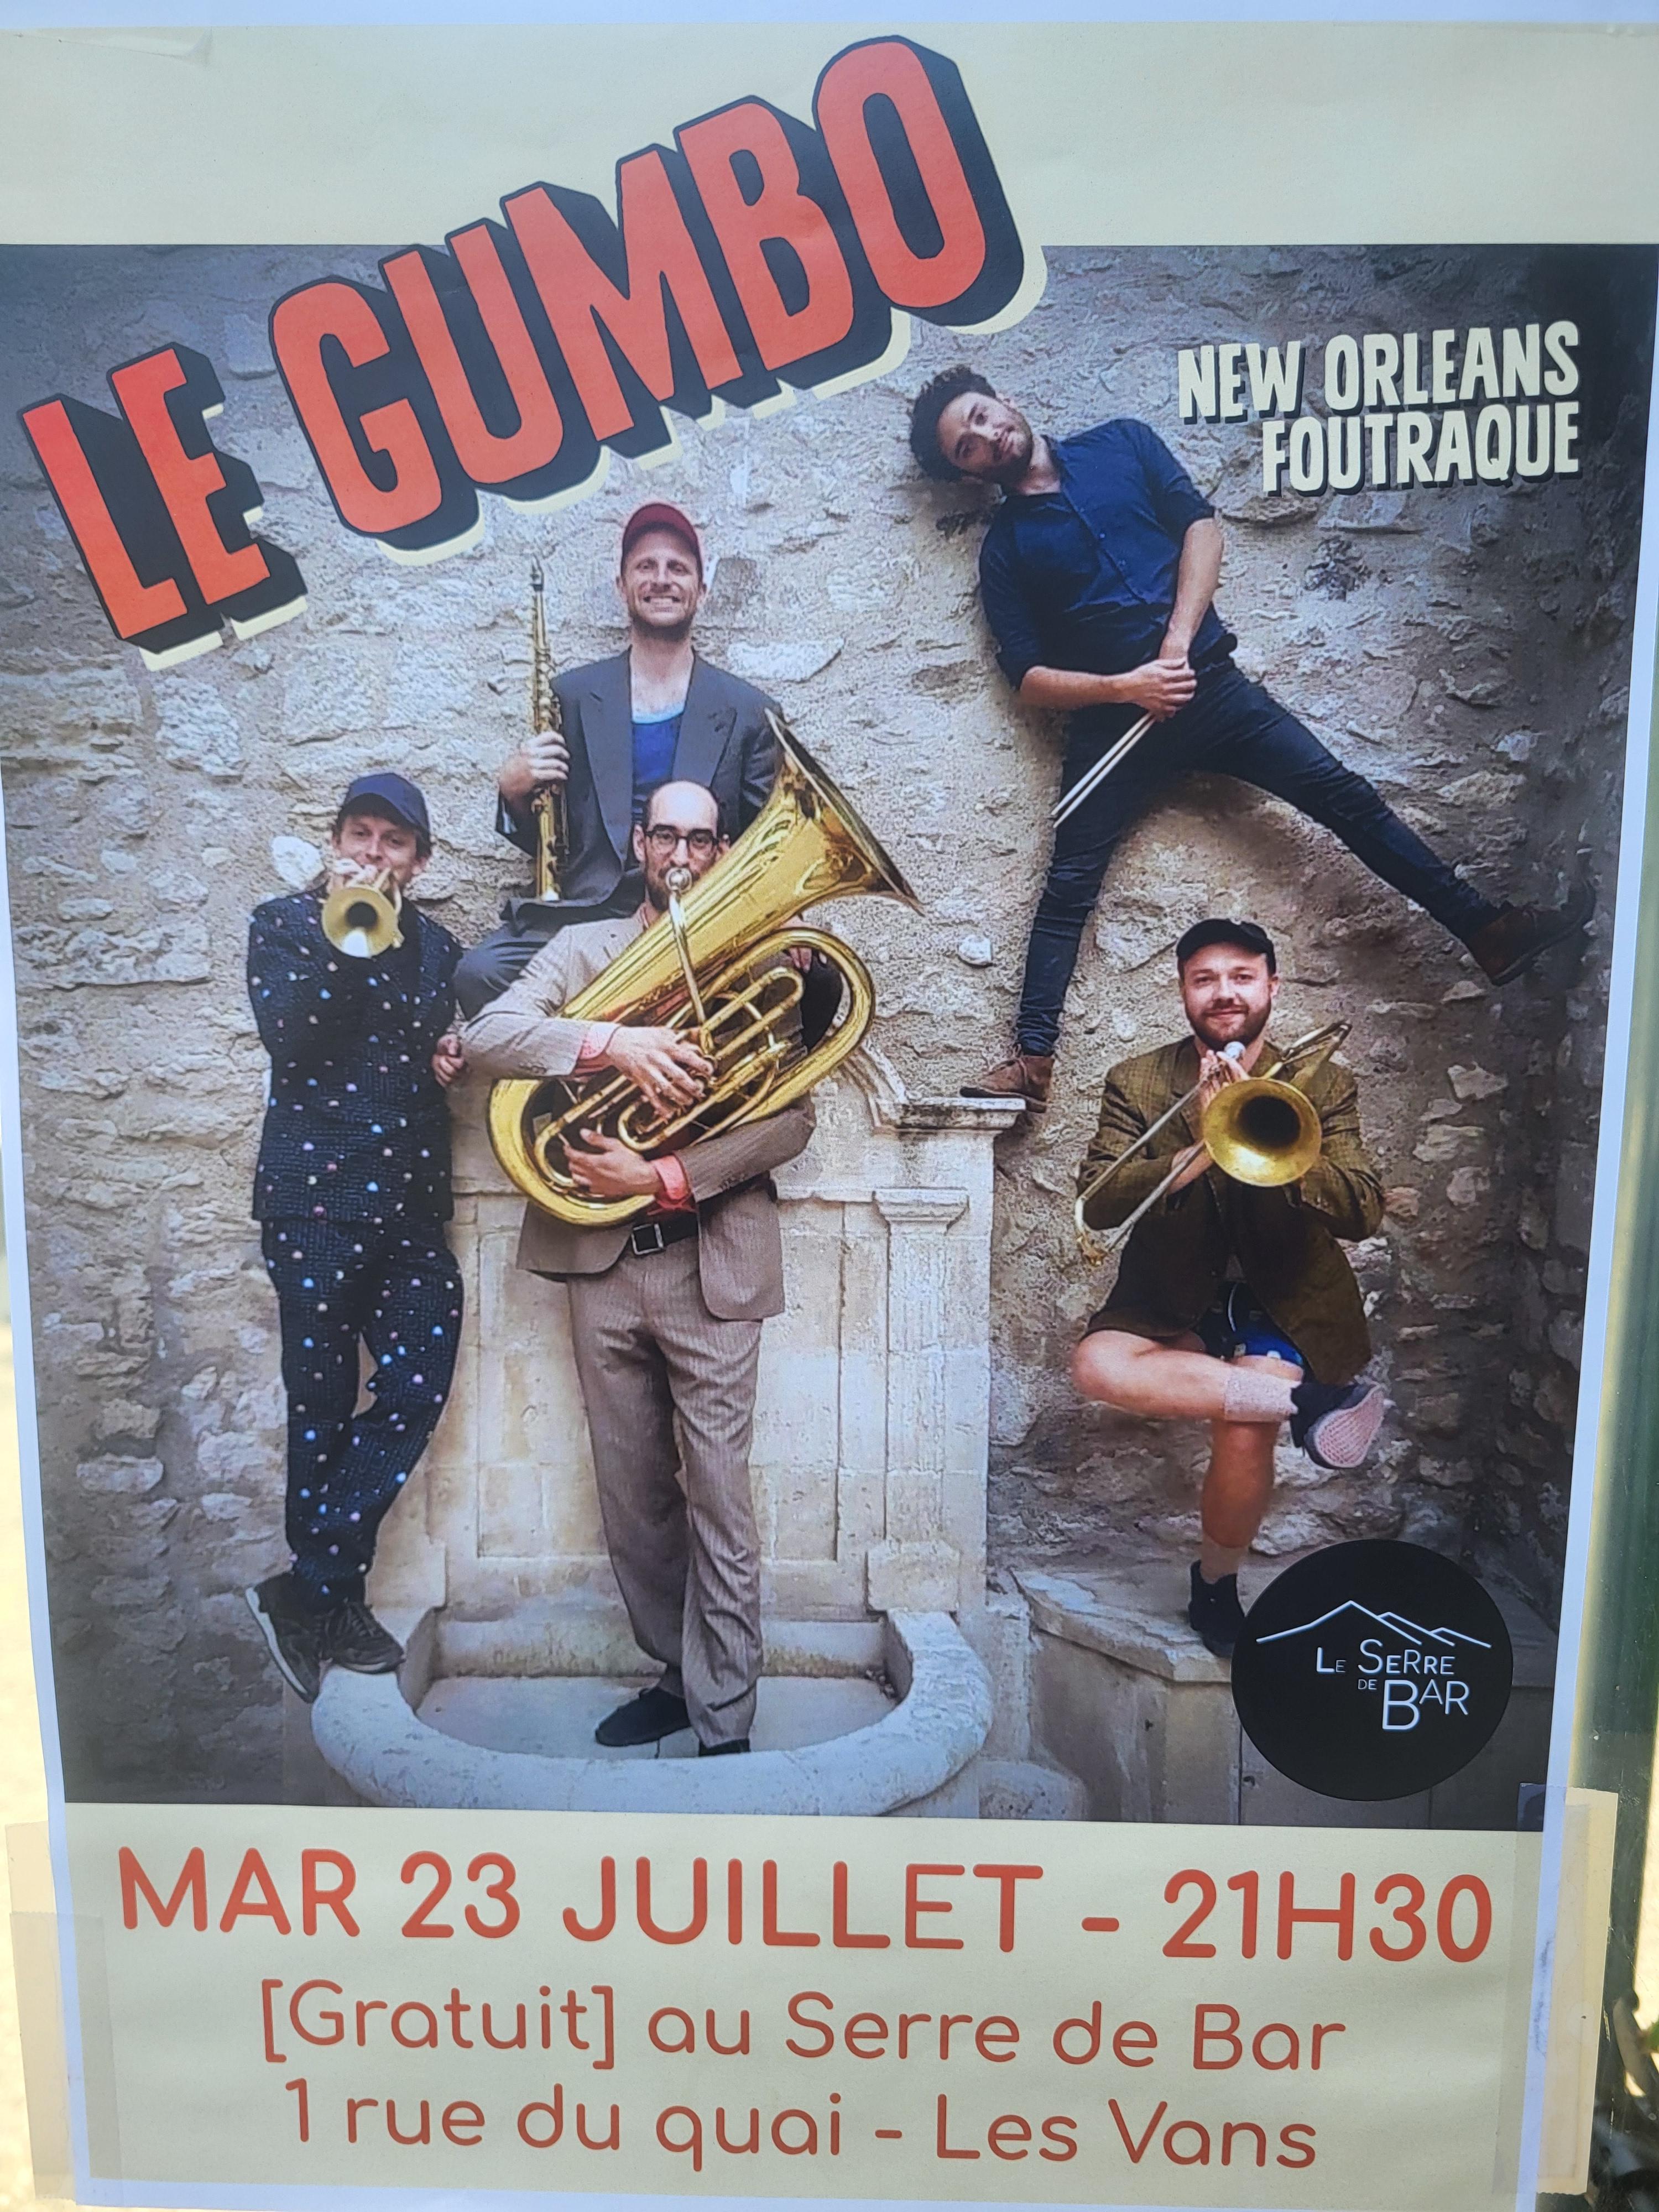 Concert : Le Gumbo, fanfare new Orléans foutraque